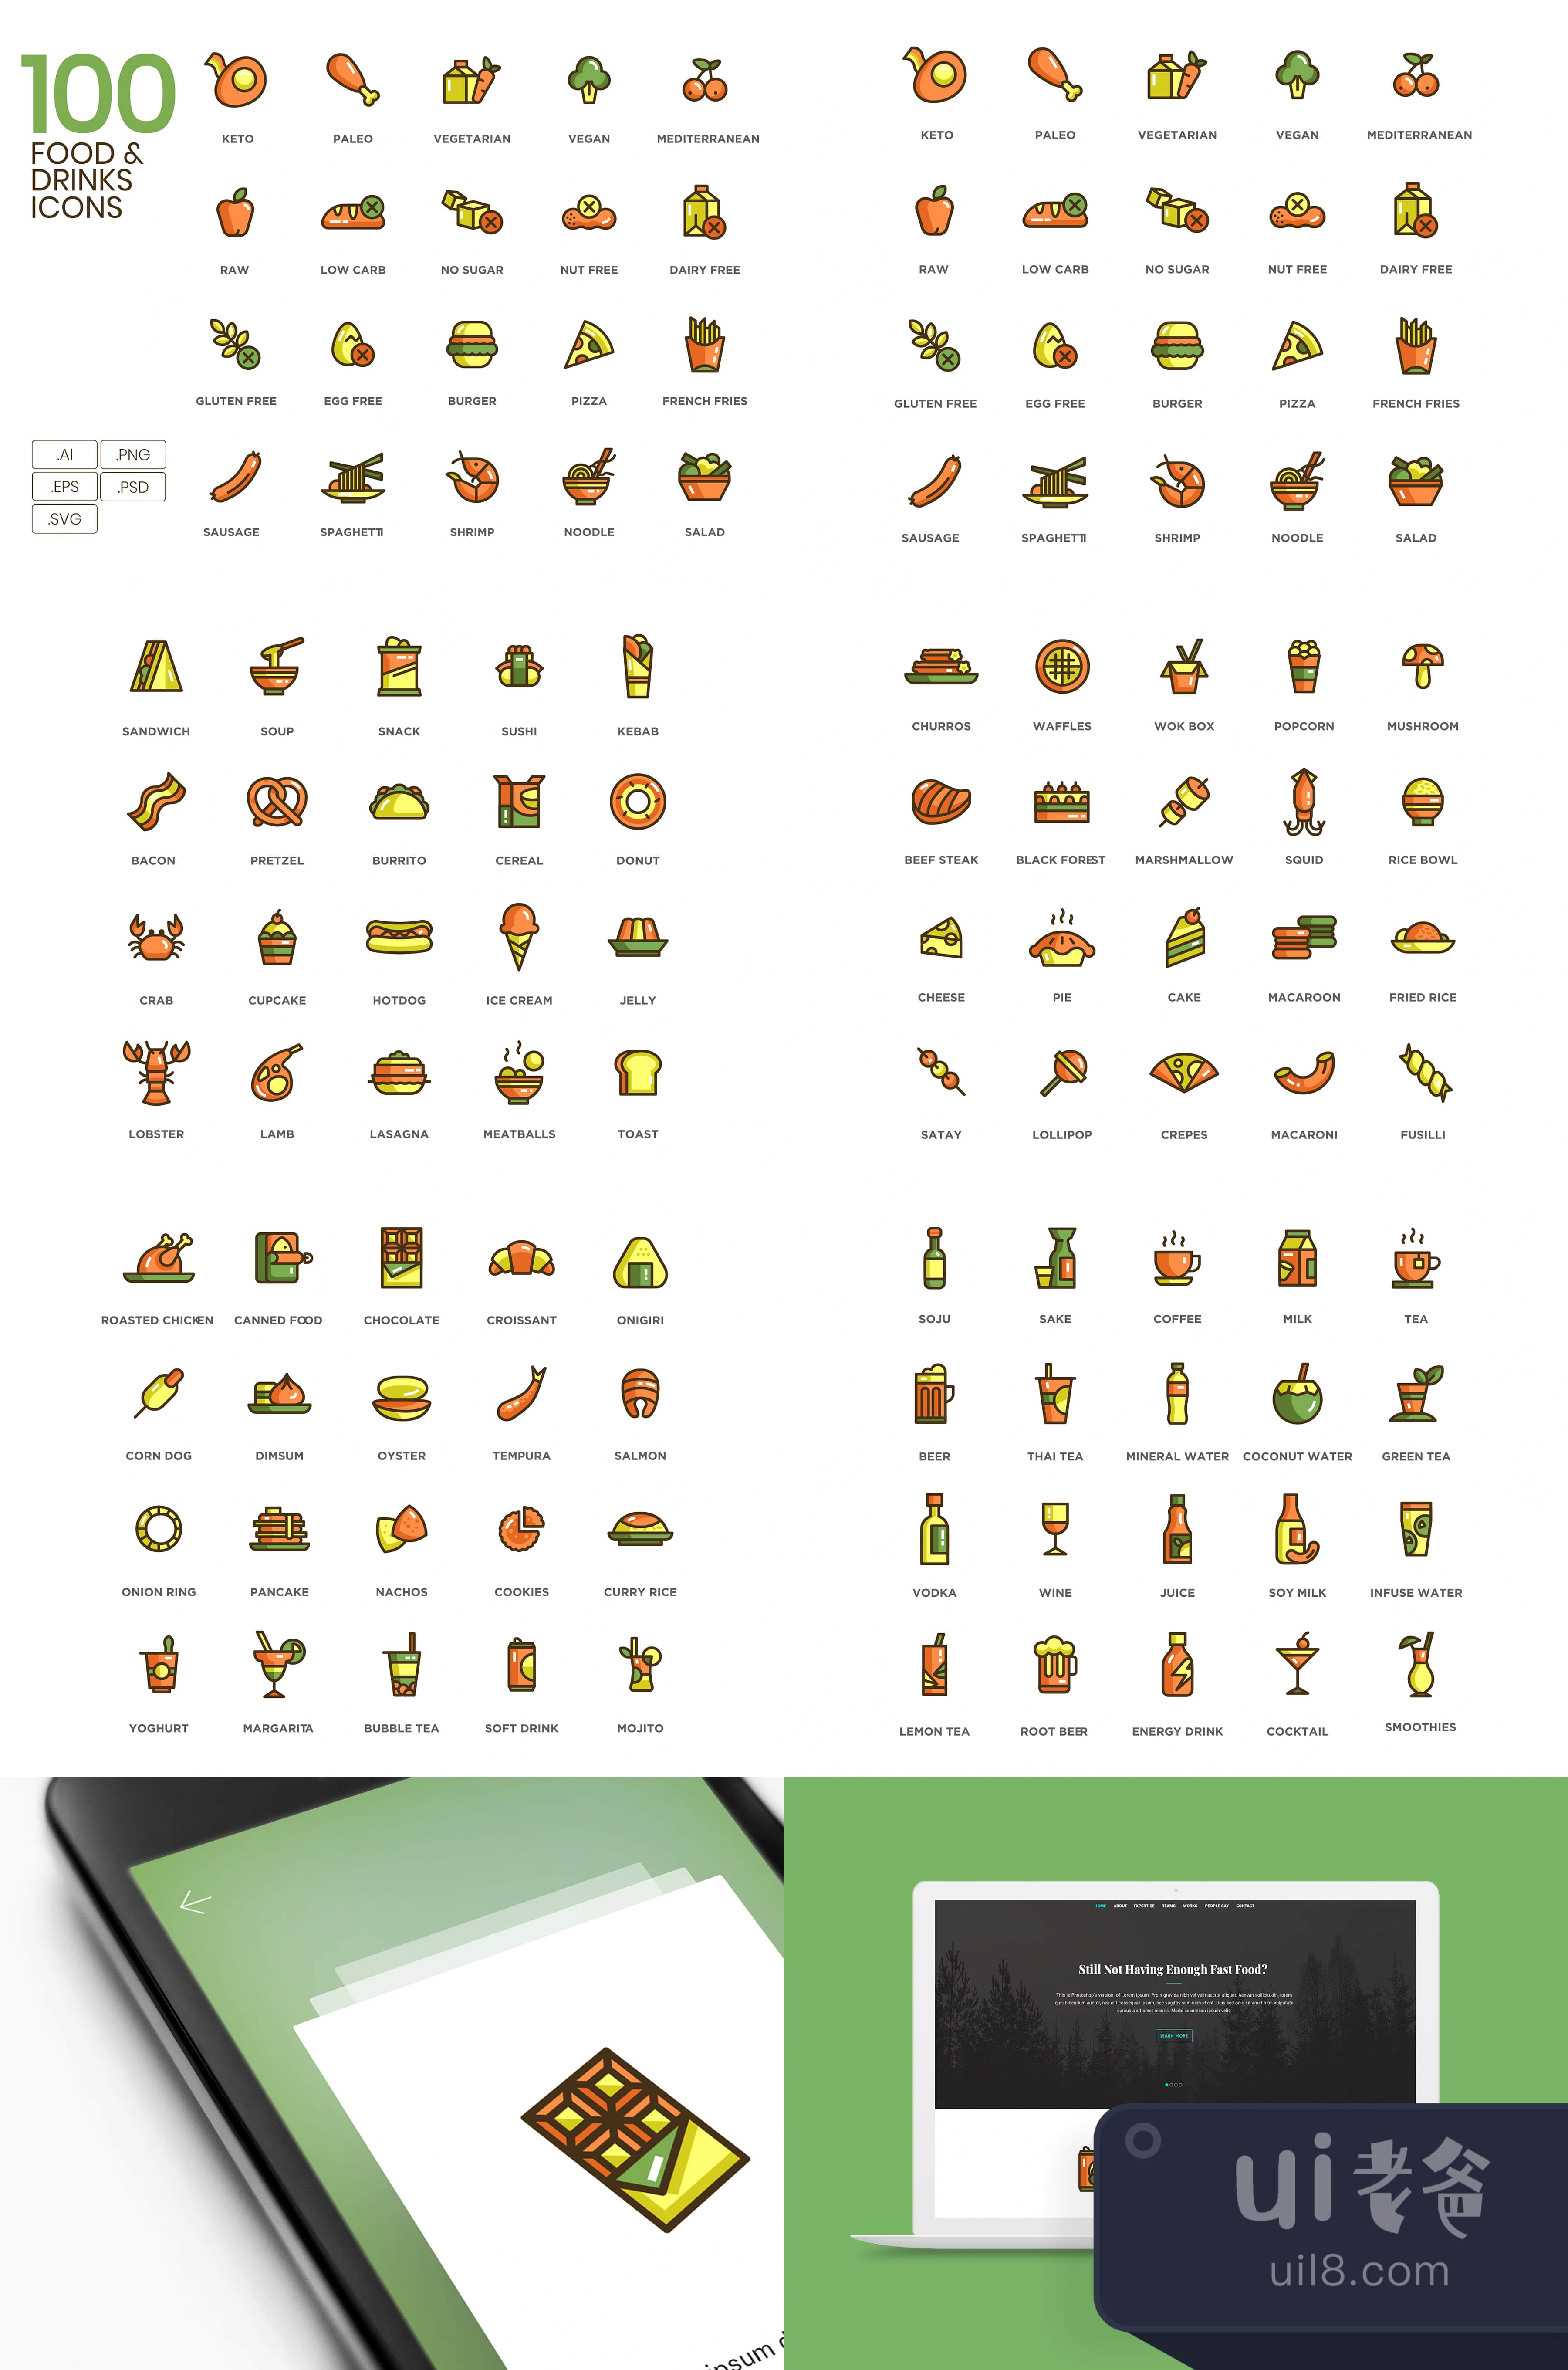 100个食品饮料图标 (100 Food  Drinks Icons)插图